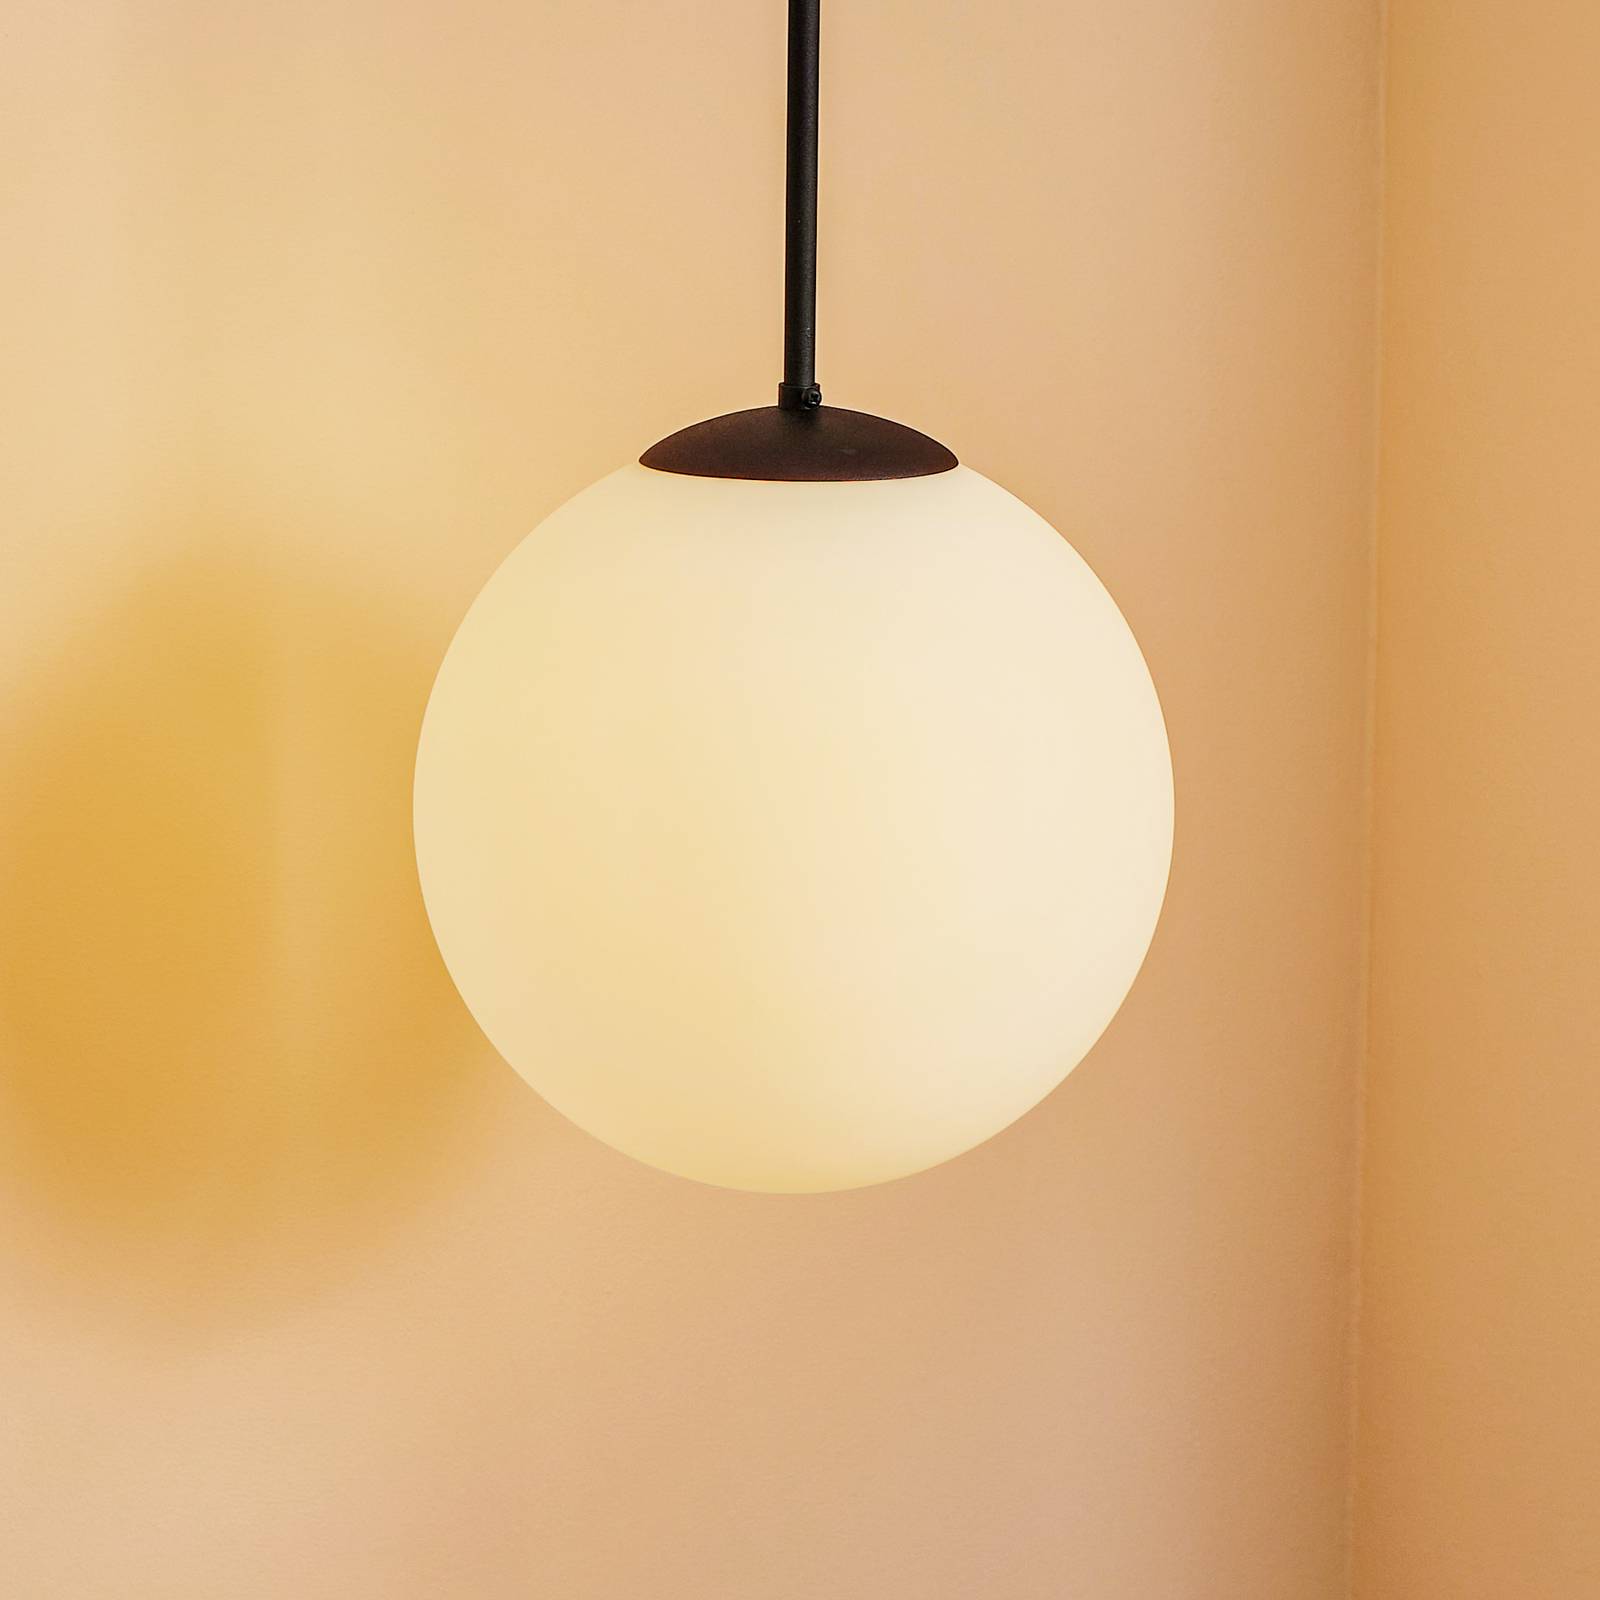 Bosso függő lámpa, egy izzós, fehér/fekete 30cm